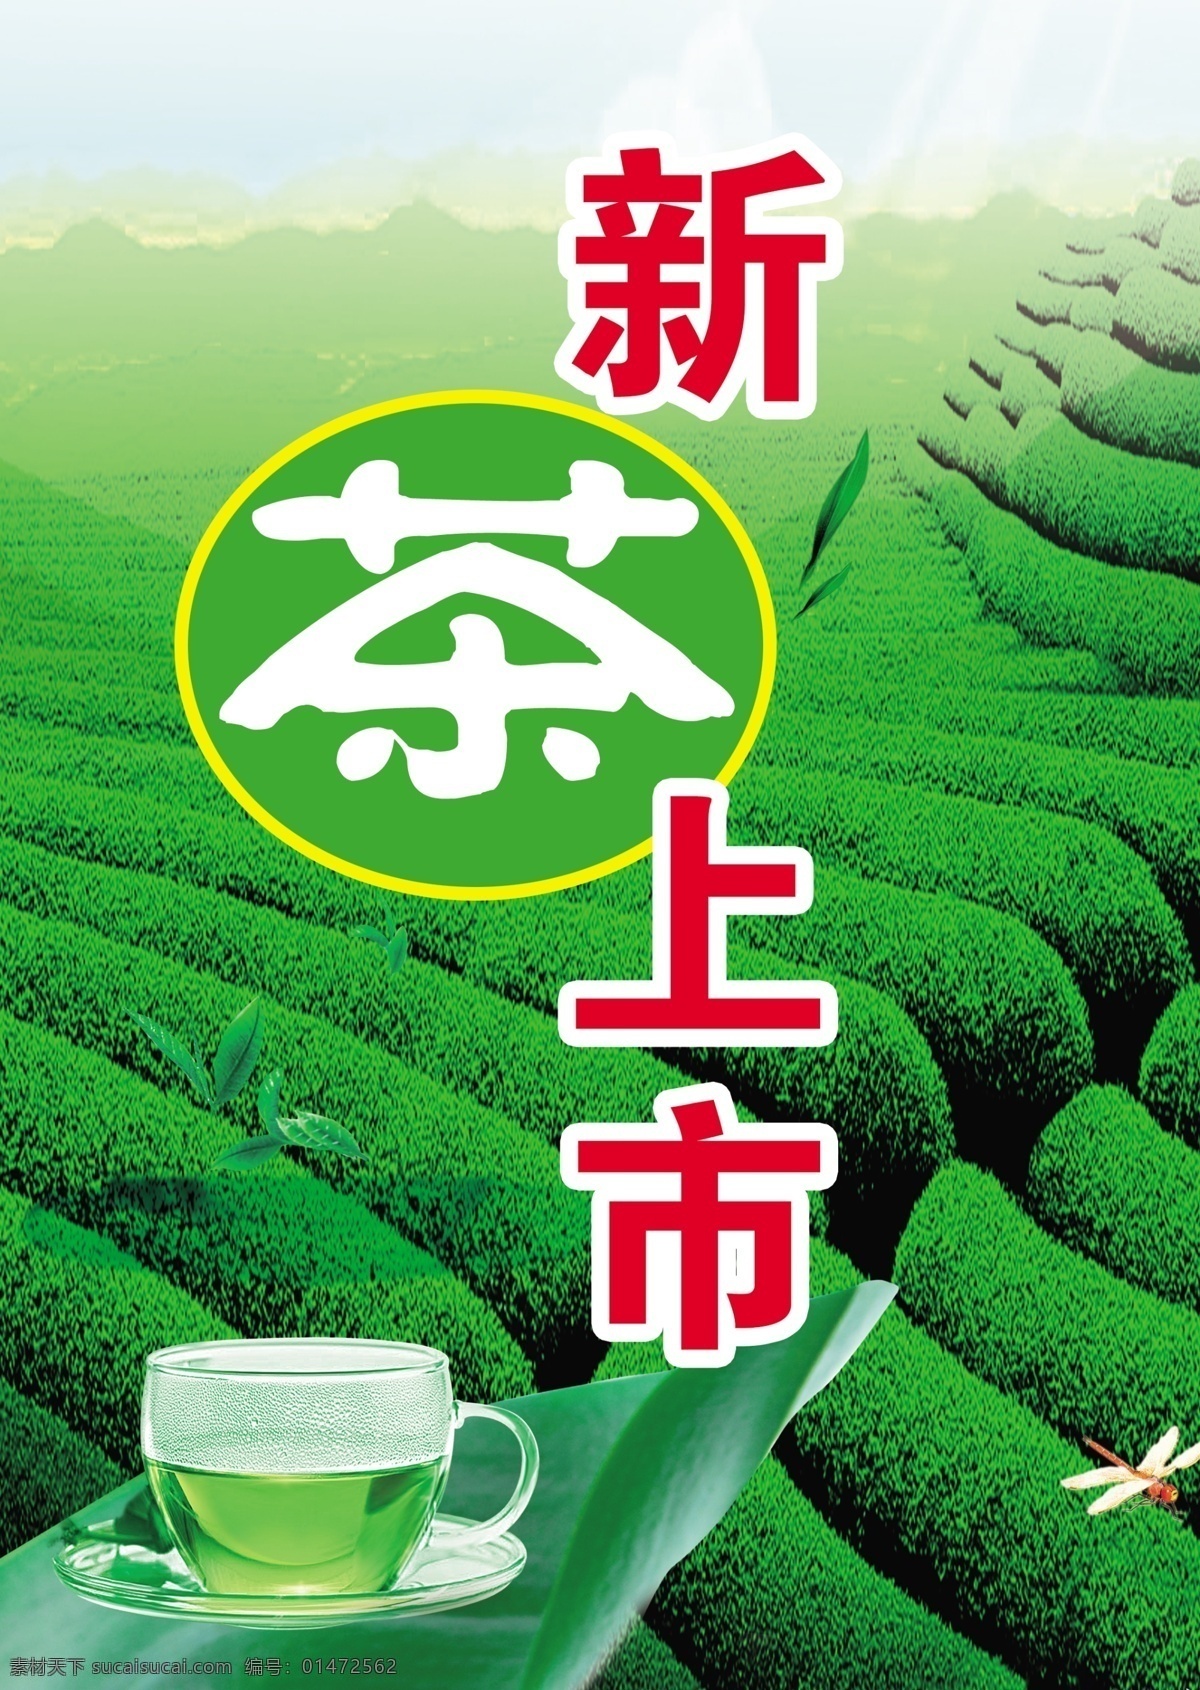 茶 茶杯 茶叶 广告设计模板 绿茶 新茶上市 叶子 新茶 上市 模板下载 茶叶树 源文件 其他海报设计